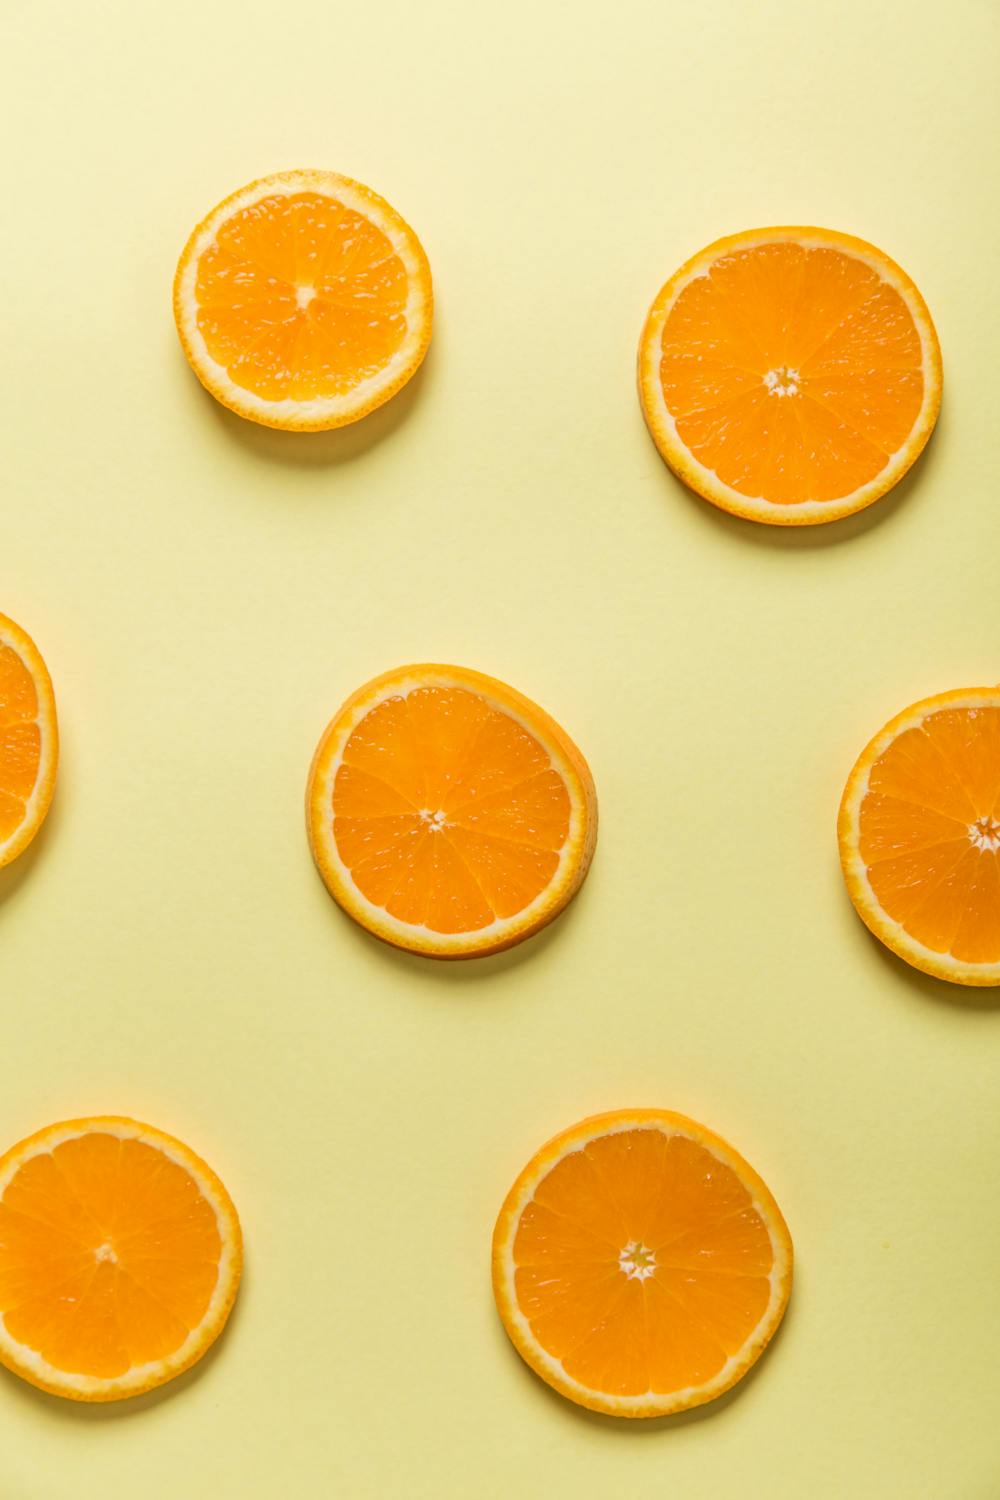 Sức khỏe là quan trọng nhất. Và vitamin C chắc chắn là một trong những chất giúp tăng cường sức đề kháng và bảo vệ sức khỏe tuyệt vời nhất. Khám phá lợi ích tuyệt vời của vitamin C thông qua những hình ảnh sống động và thú vị cùng với hình nền sáng tạo Vitamin C.